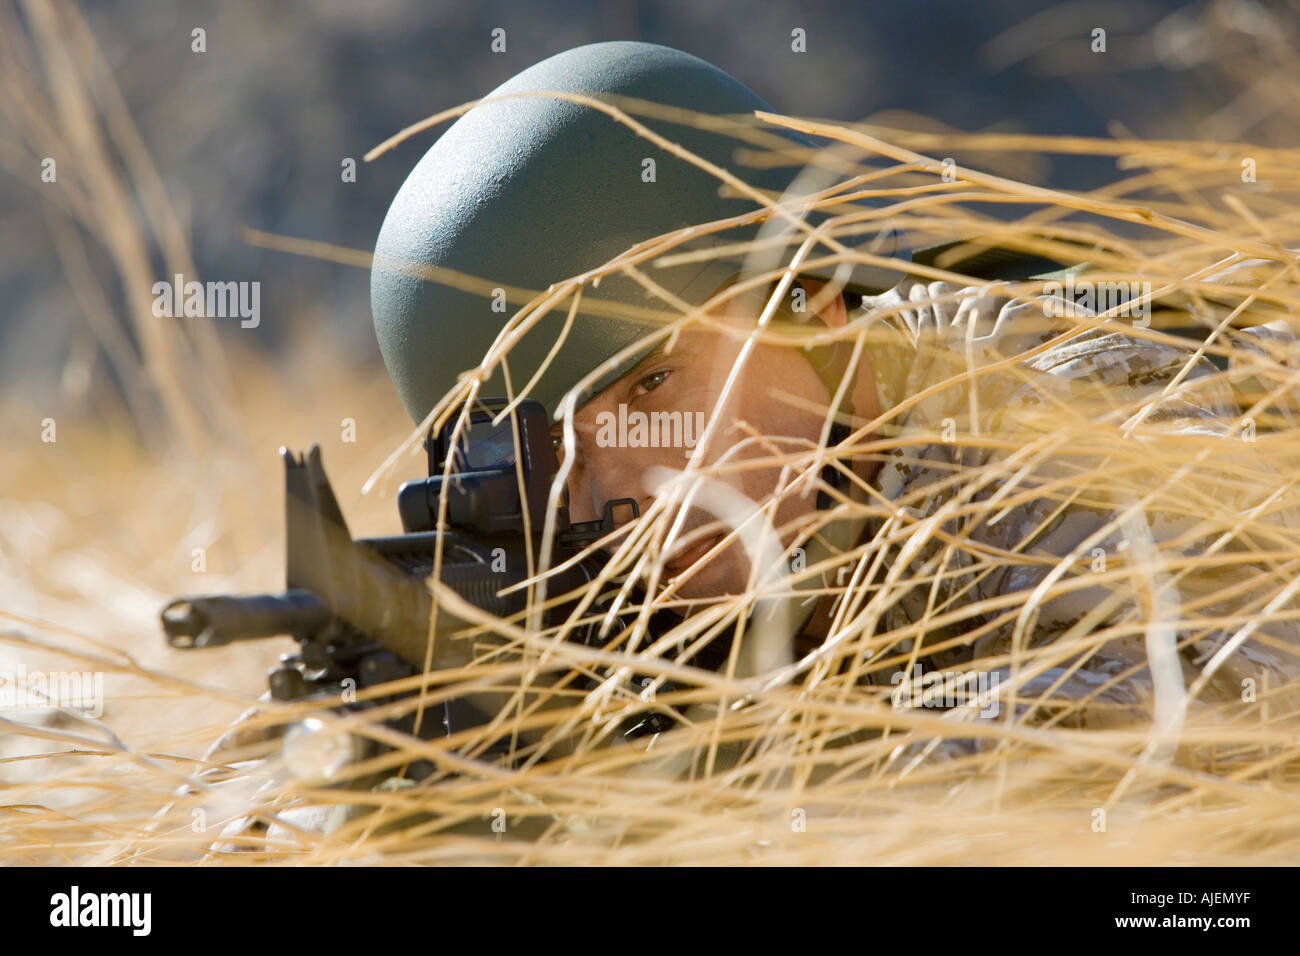 Soldat visant carabine, se cachant dans les herbes hautes, (close-up) Banque D'Images